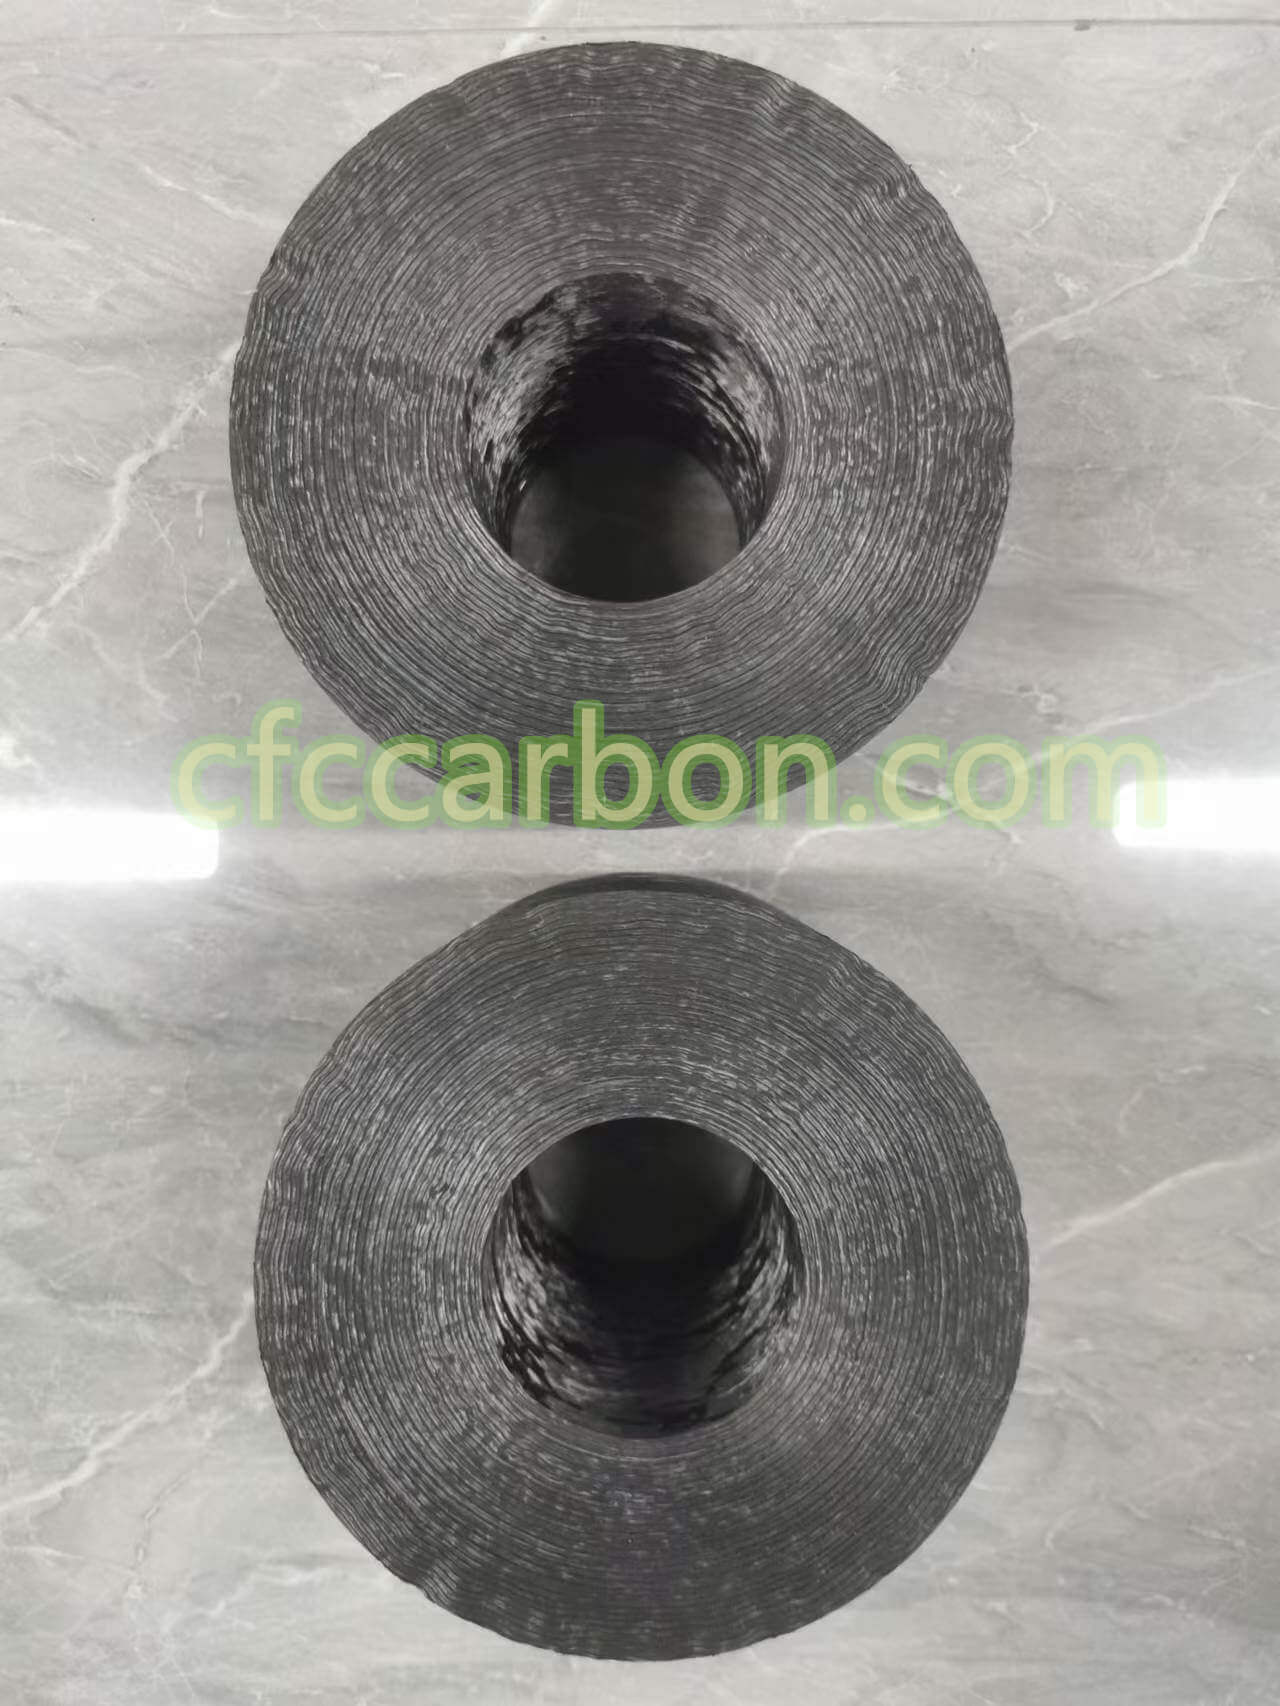 Low & high pressure carbon fiber composite mould-CC-CFC (3)